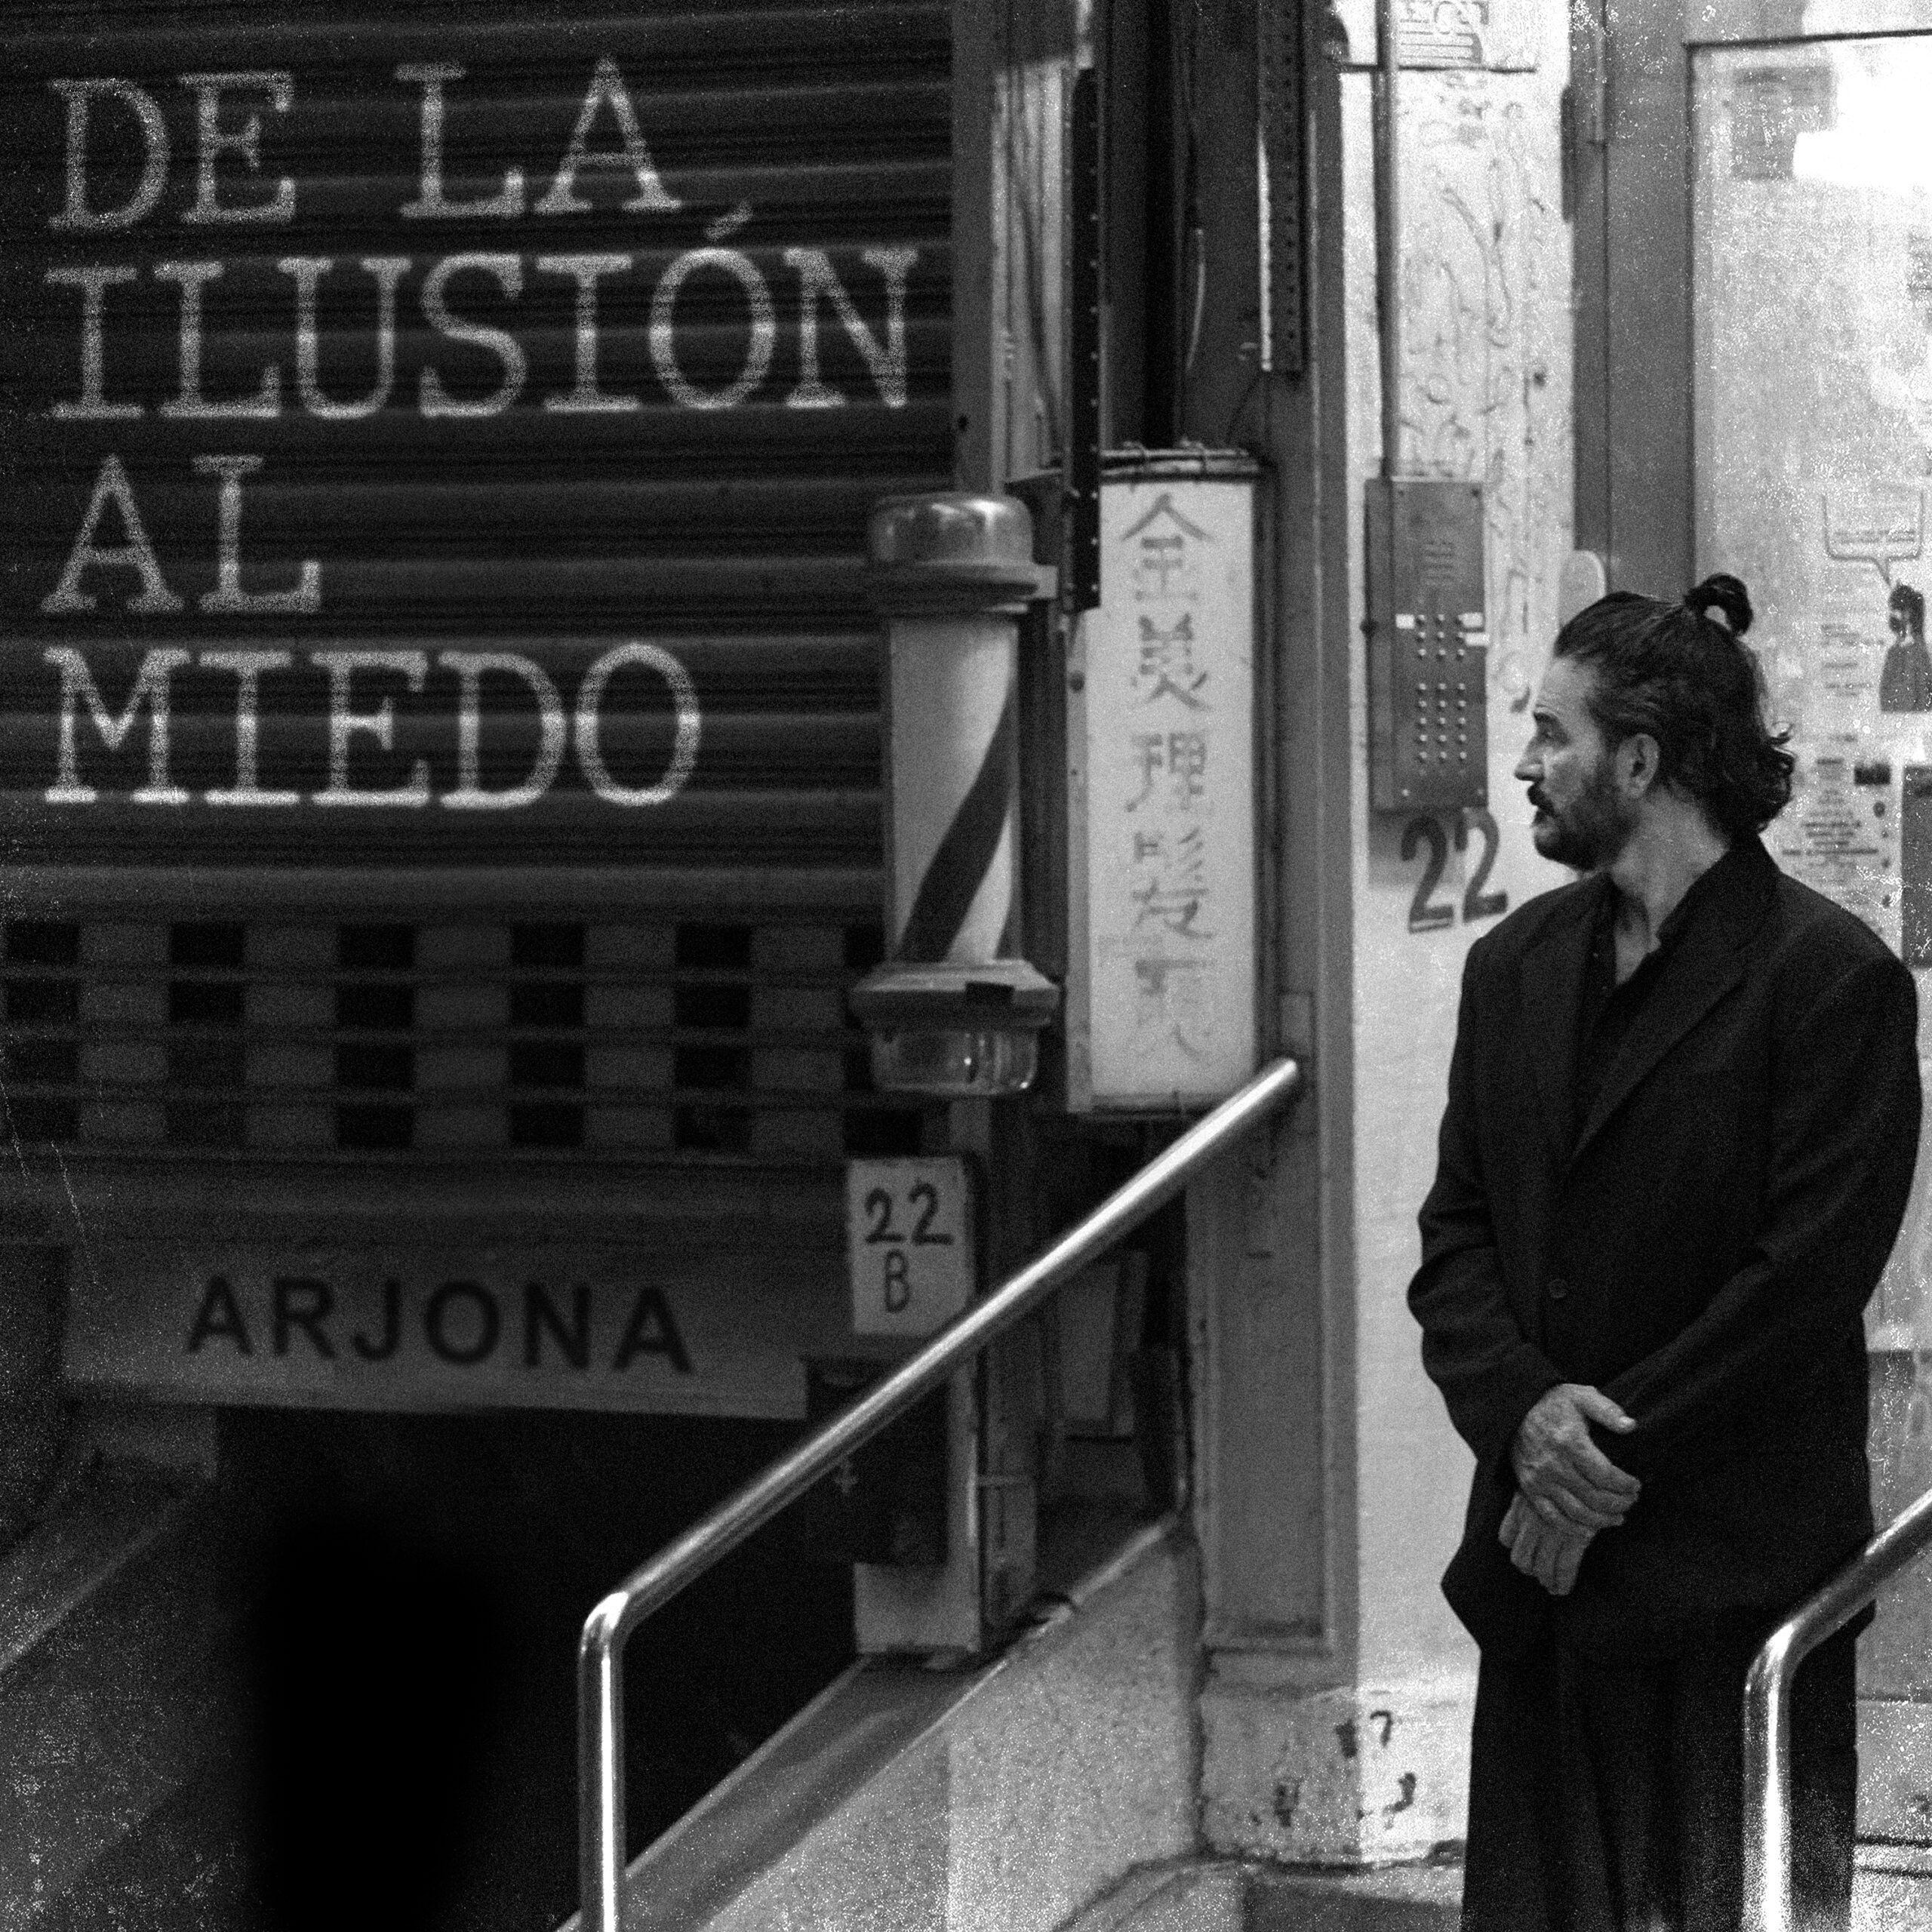 “De La Ilusión Al Miedo» con Ricardo Arjona